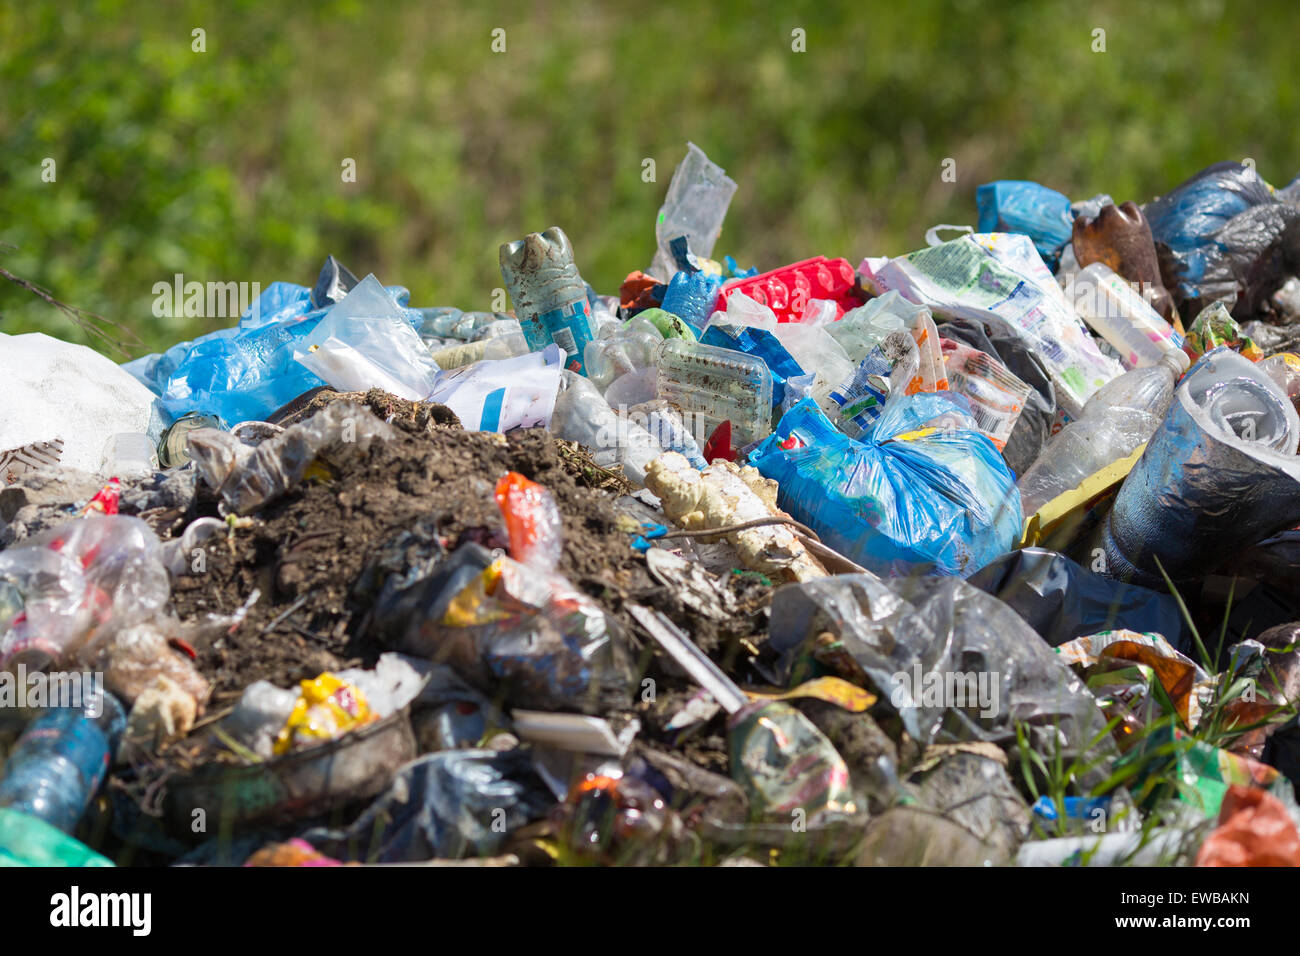 Garbage heap outdoor. Environmental pollution concept. Stock Photo